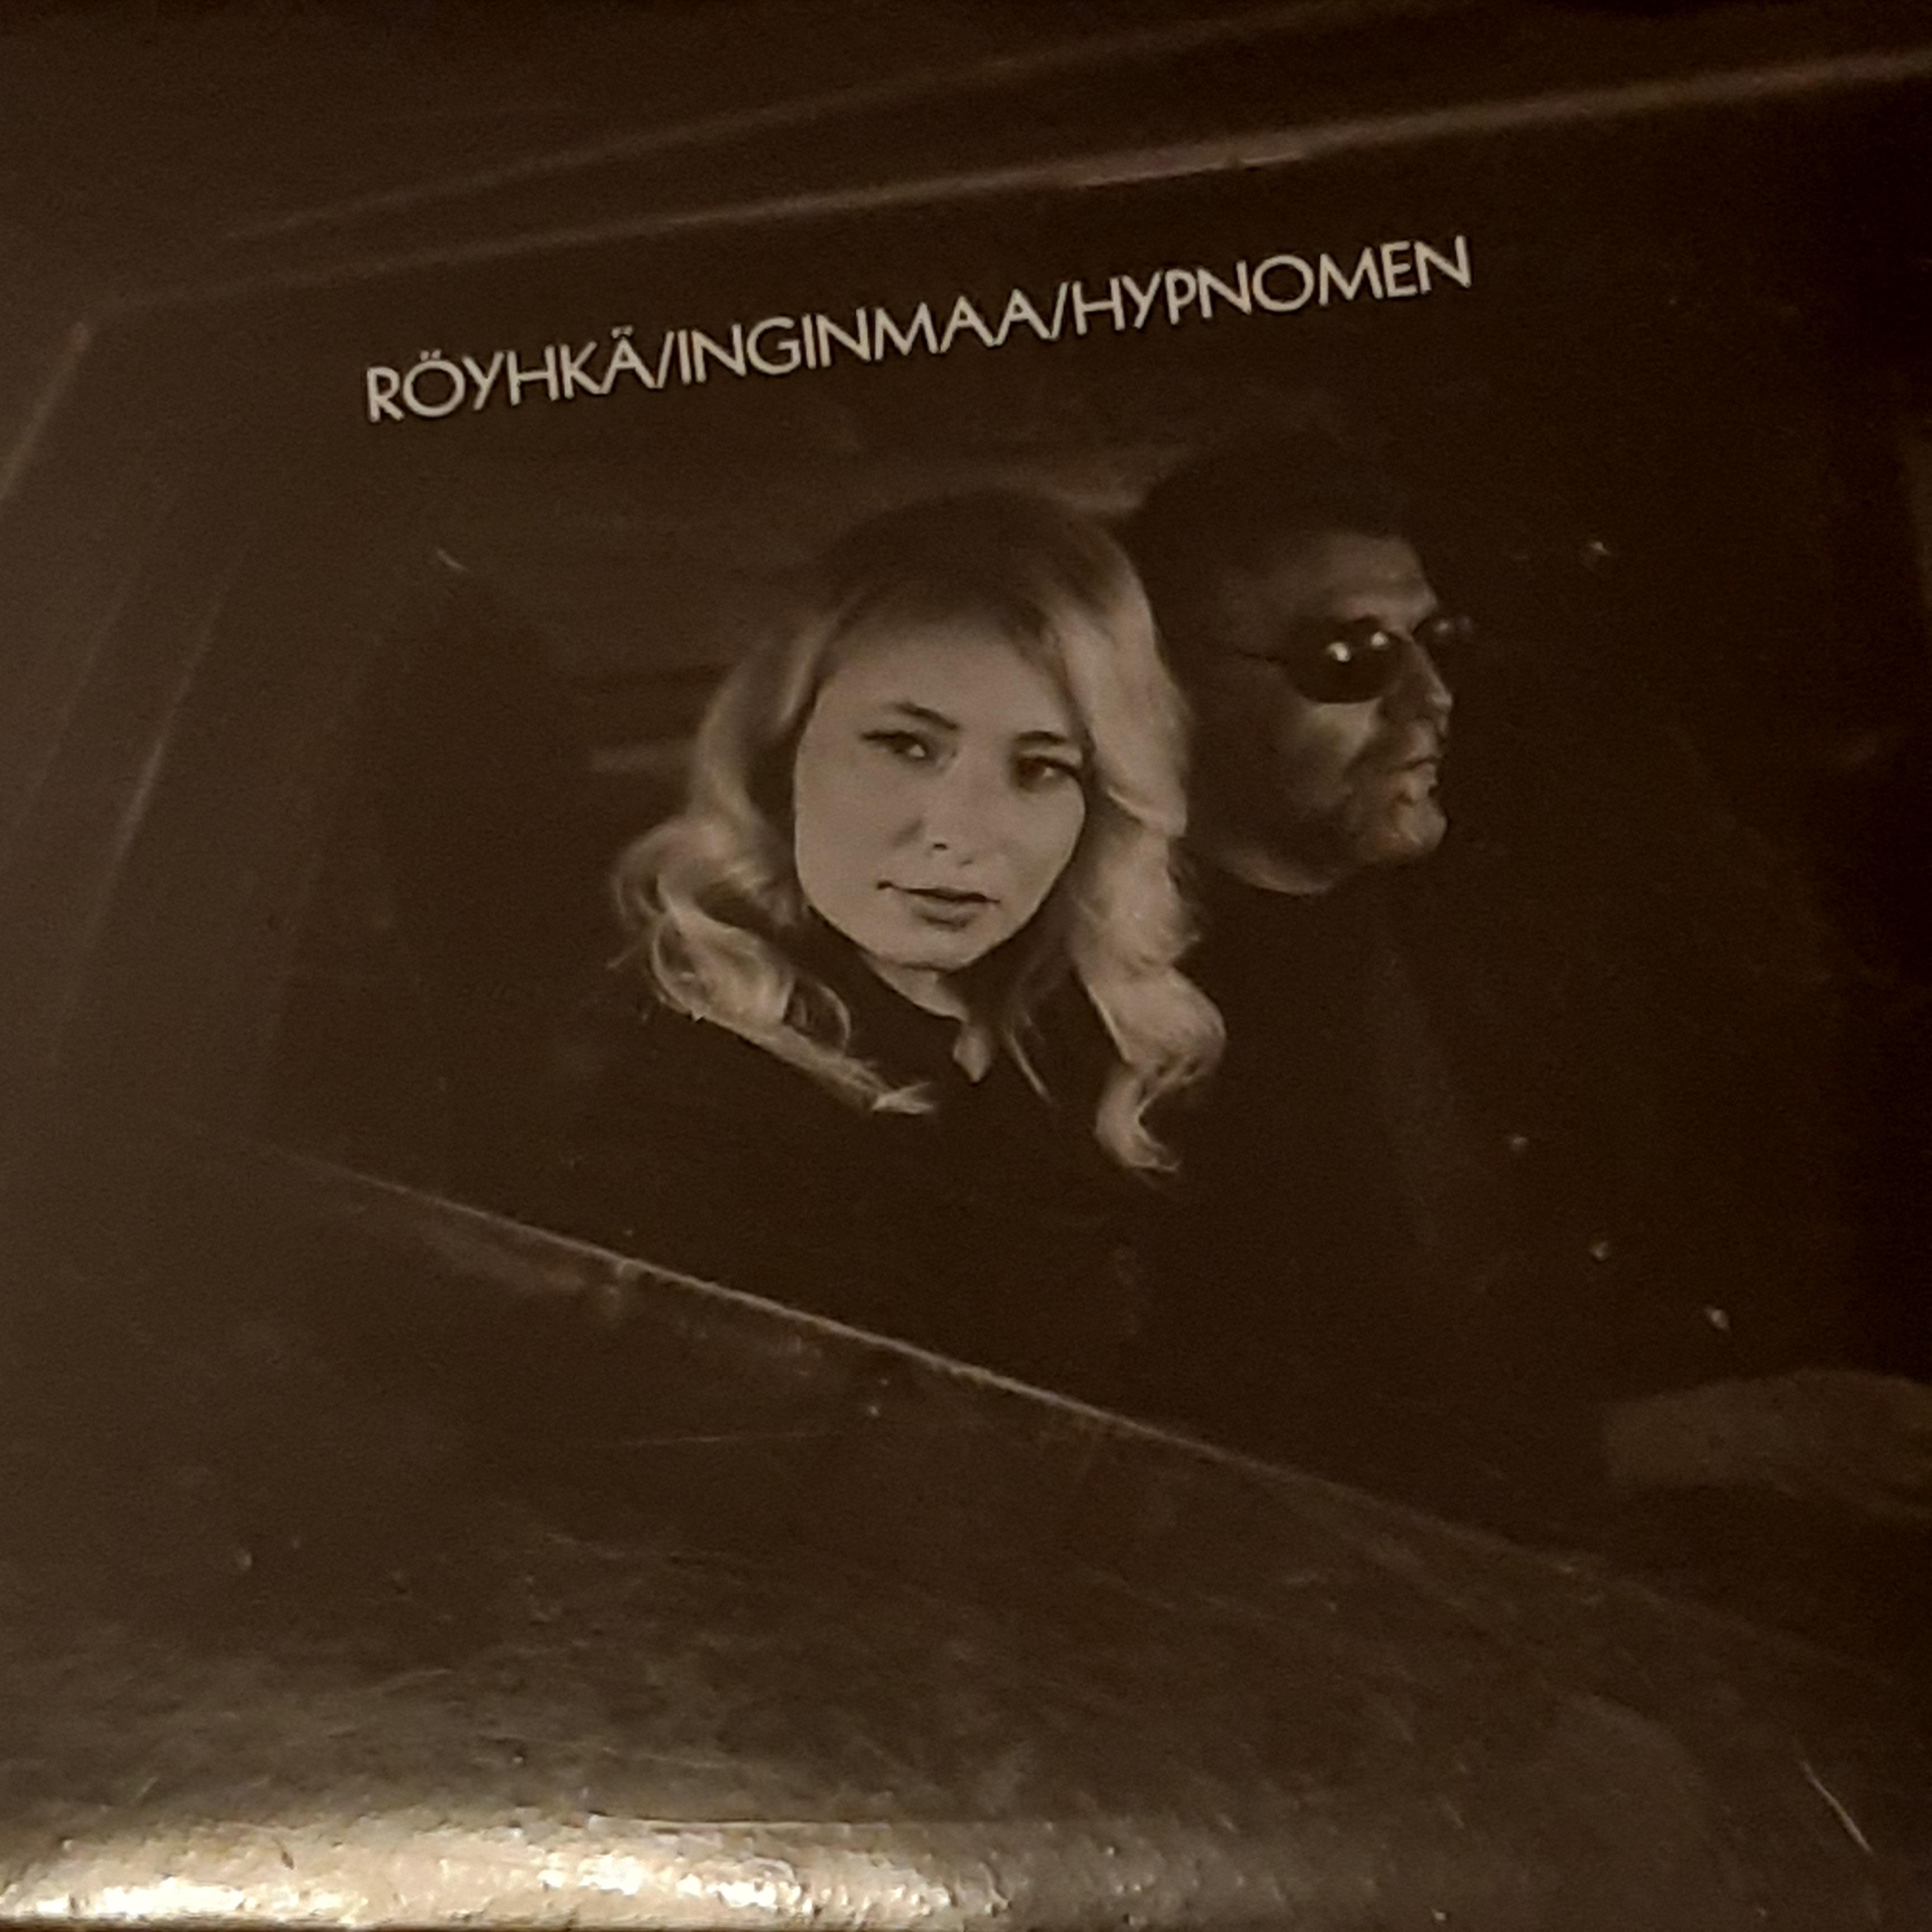 Röyhkä/Inginmaa/Hypnomen - CD (uusi)